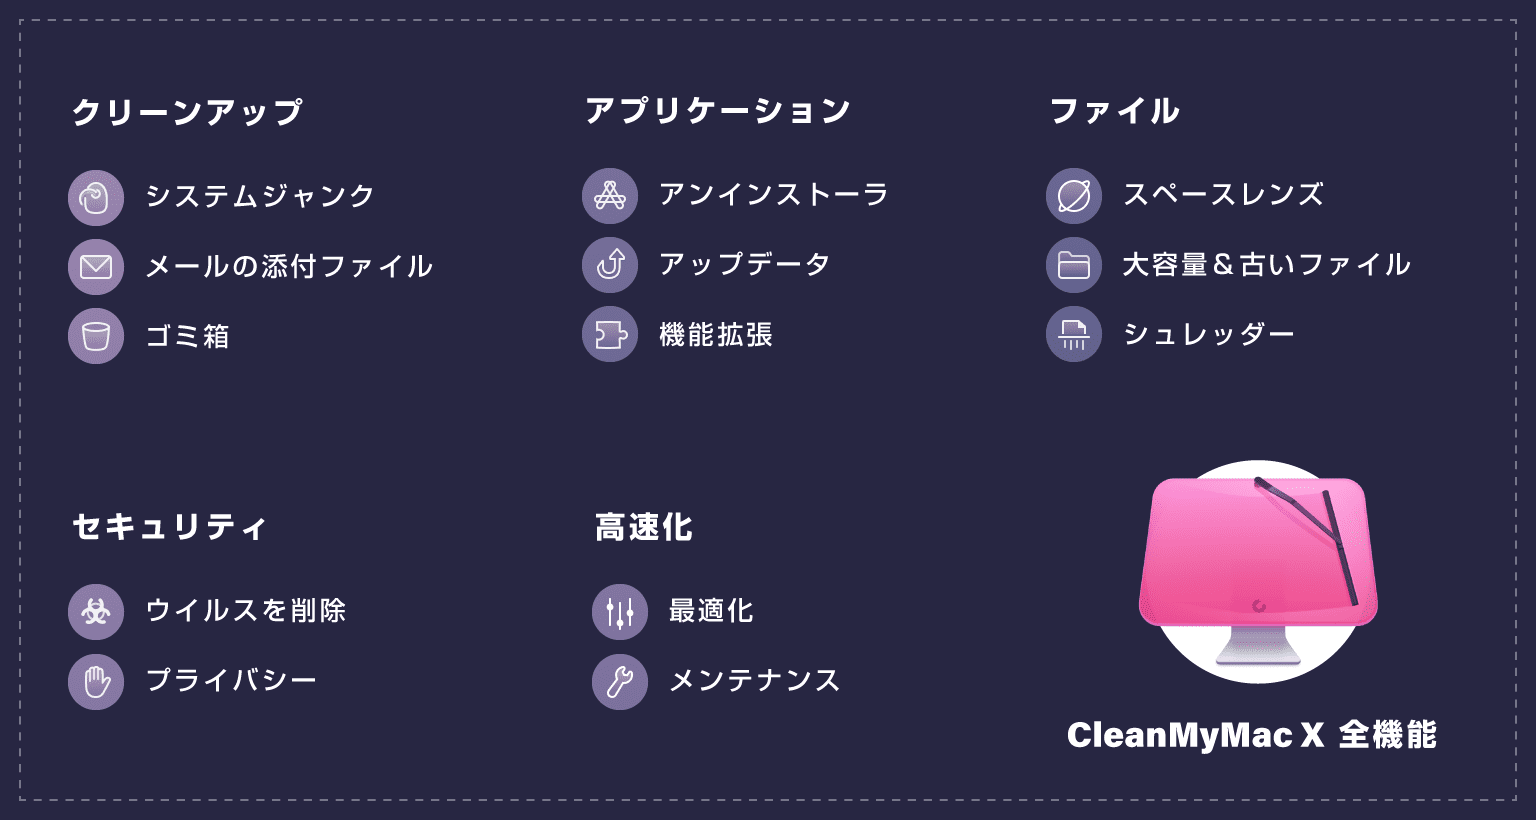 CleanMyMac X の全ての機能一覧表